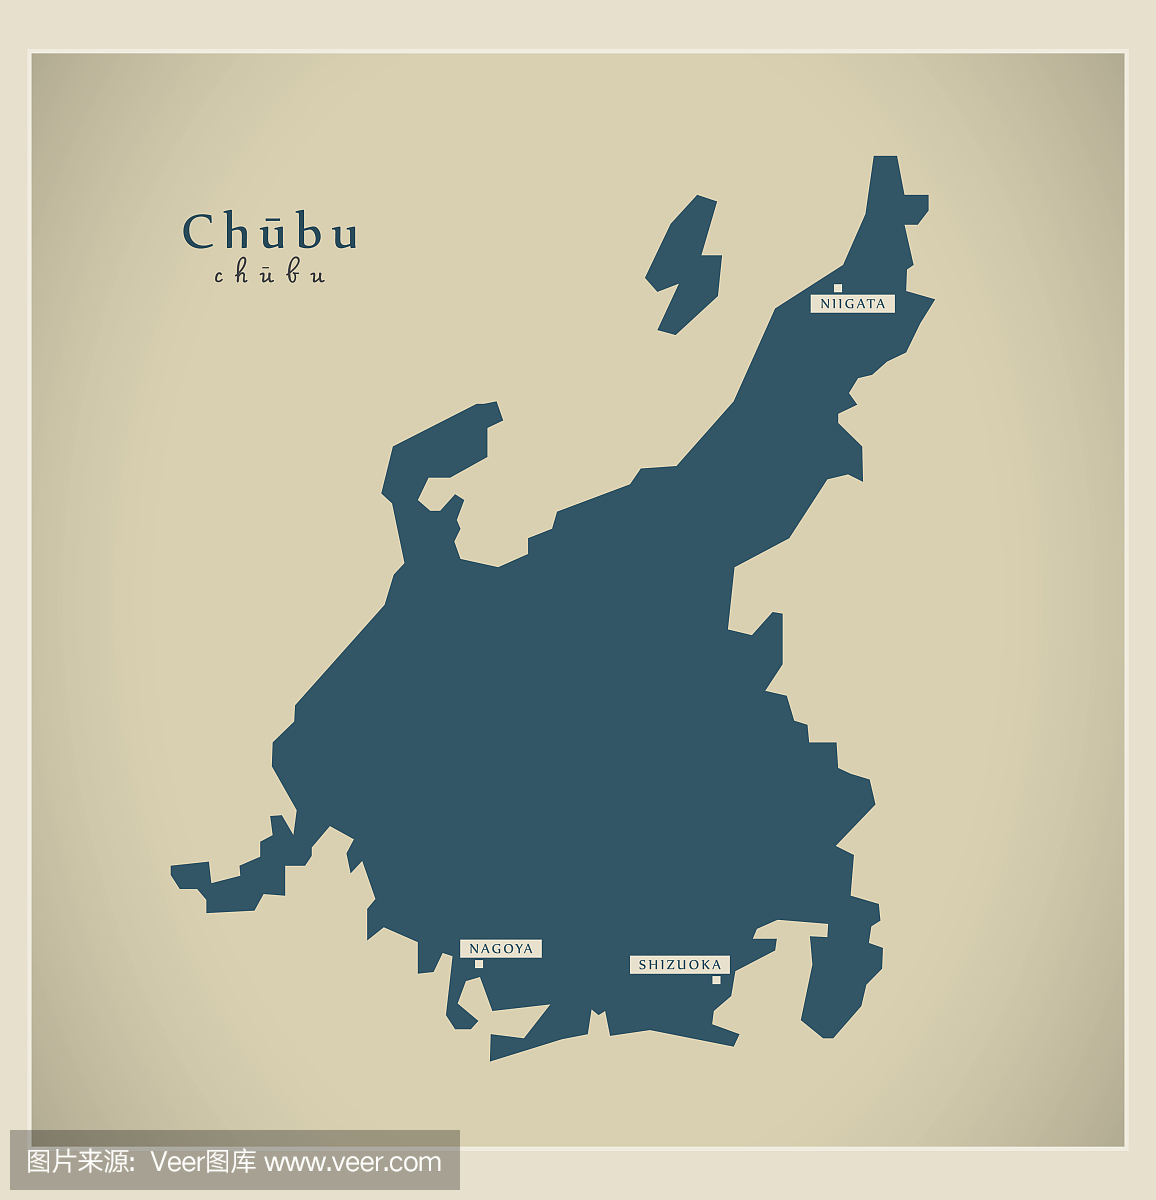 现代地图 - Chubu JP